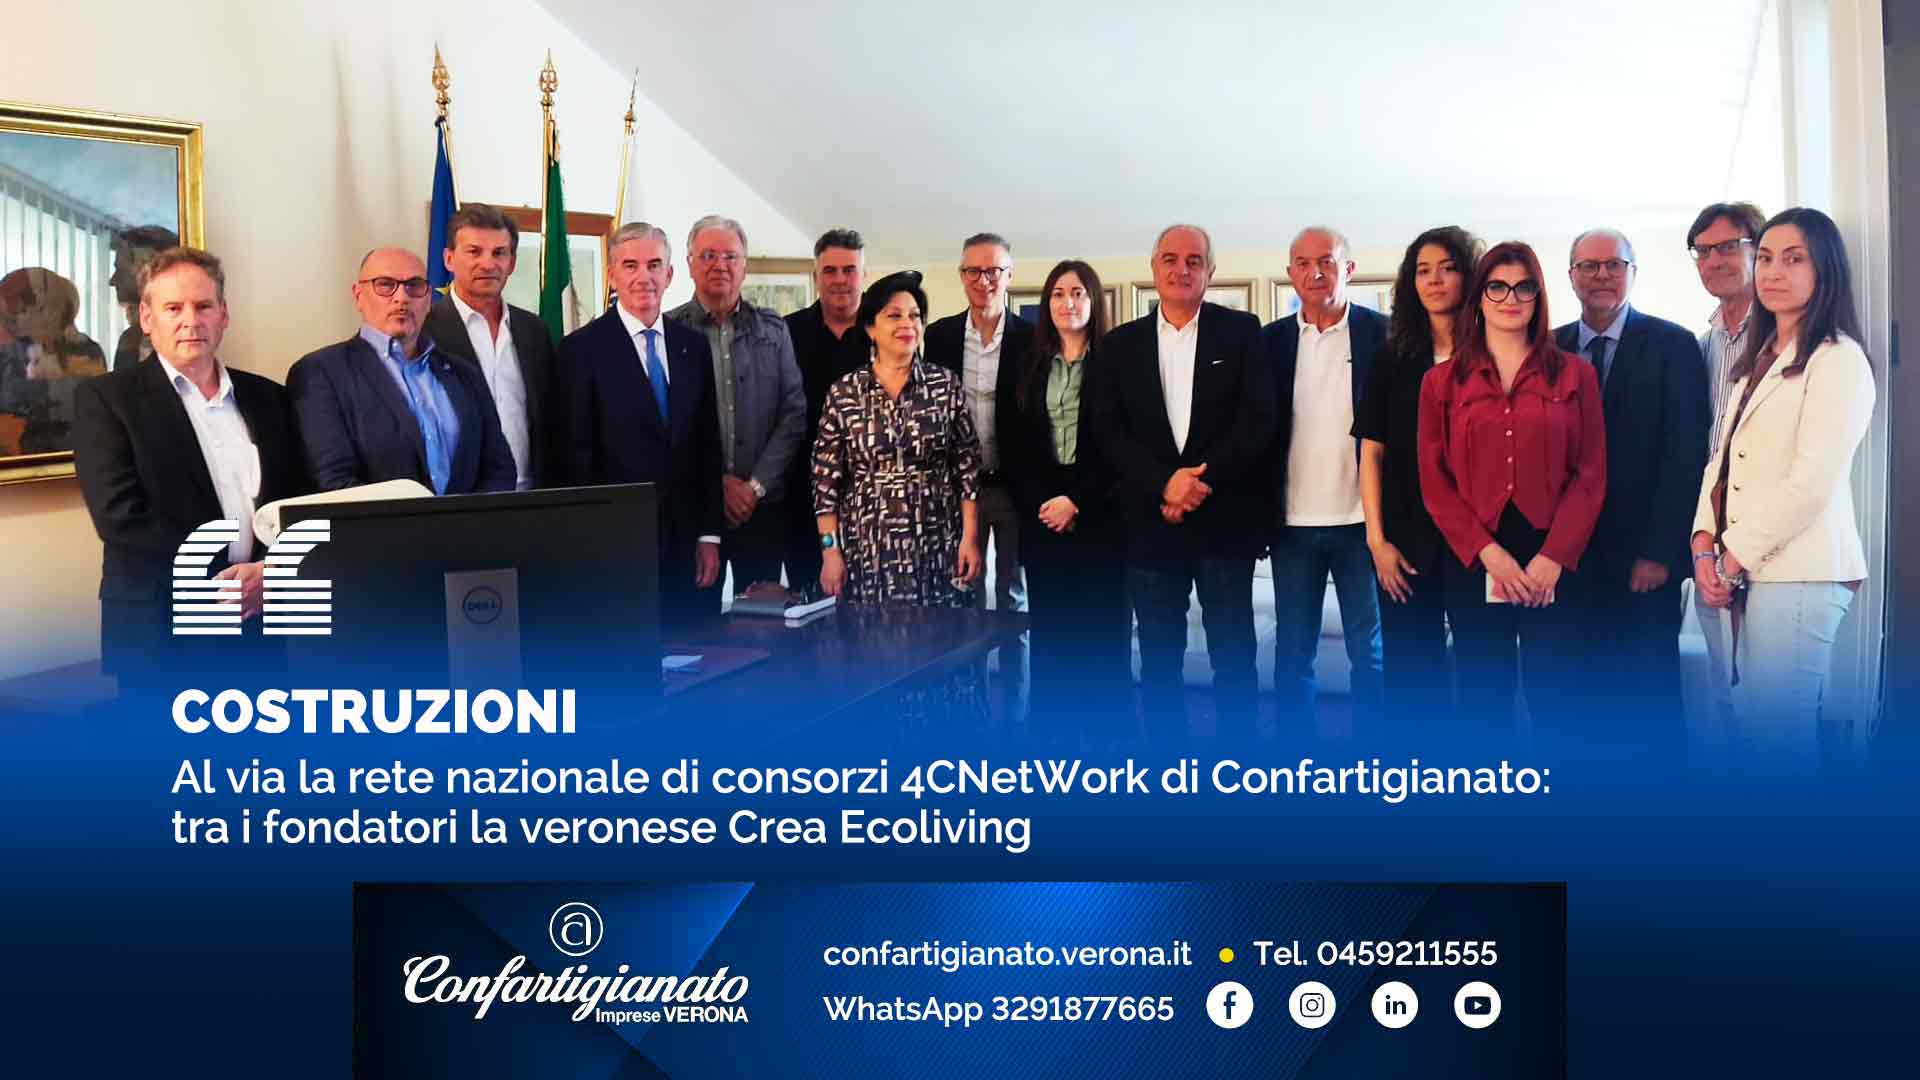 COSTRUZIONI – Al via la rete nazionale di consorzi 4CNetWork di Confartigianato: tra i fondatori la veronese Crea Ecoliving